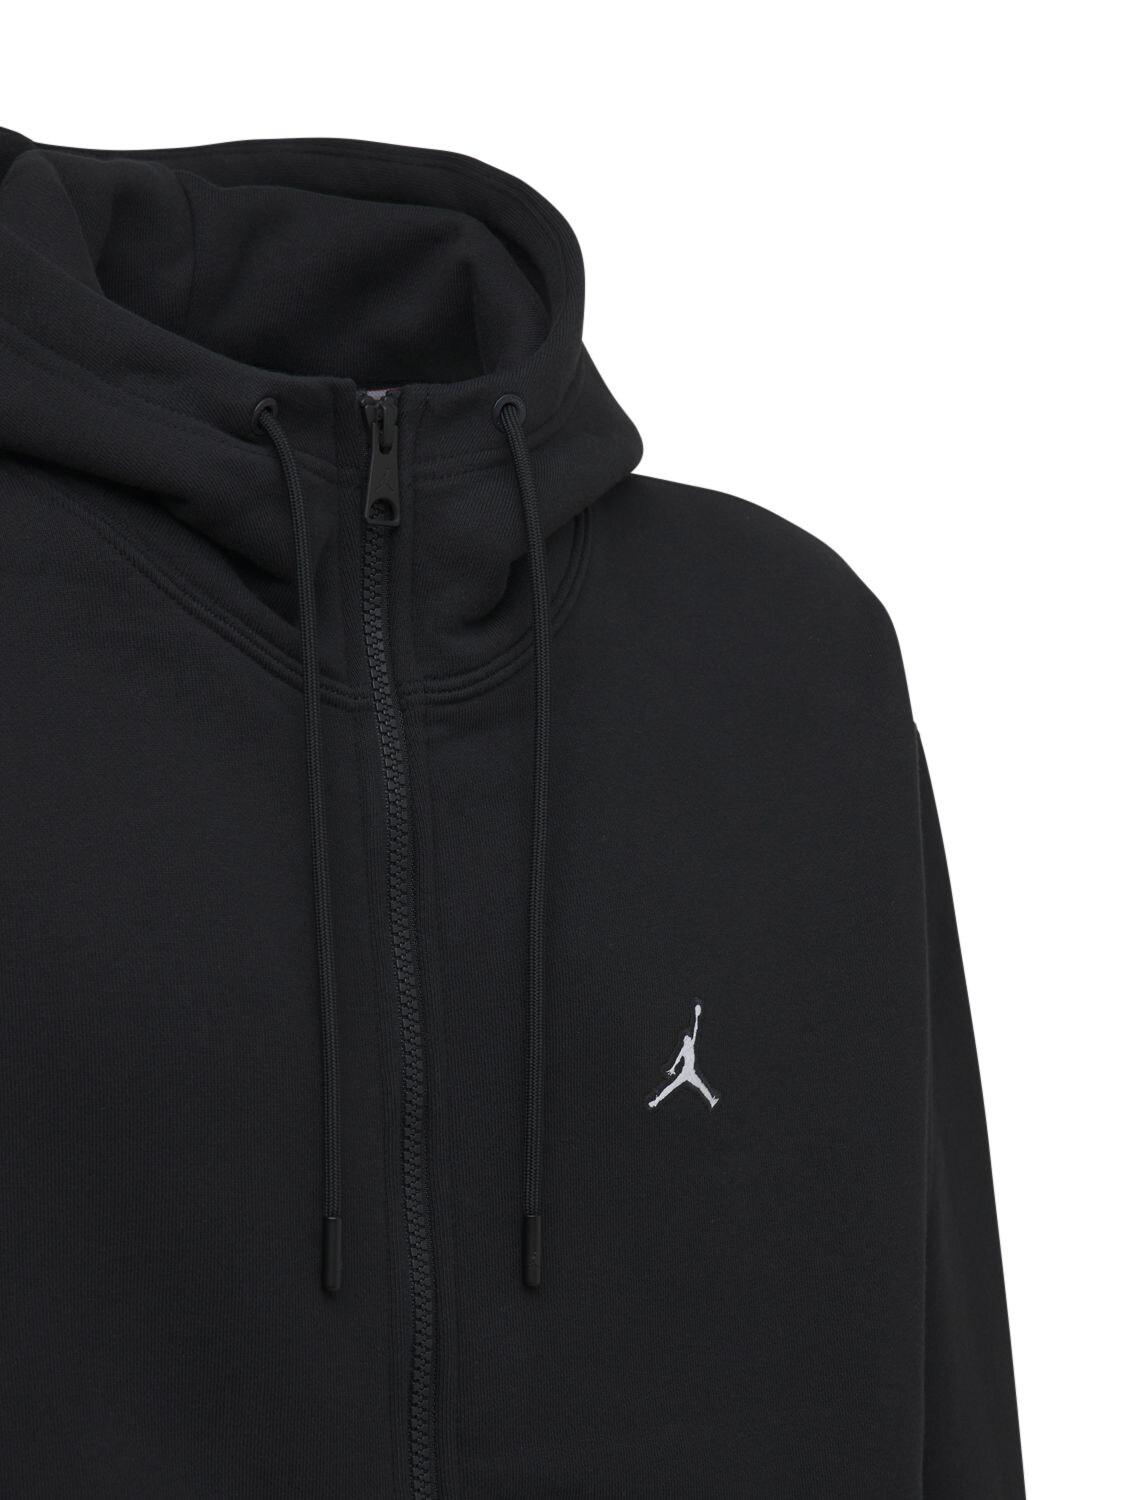 black jordan zip up hoodie